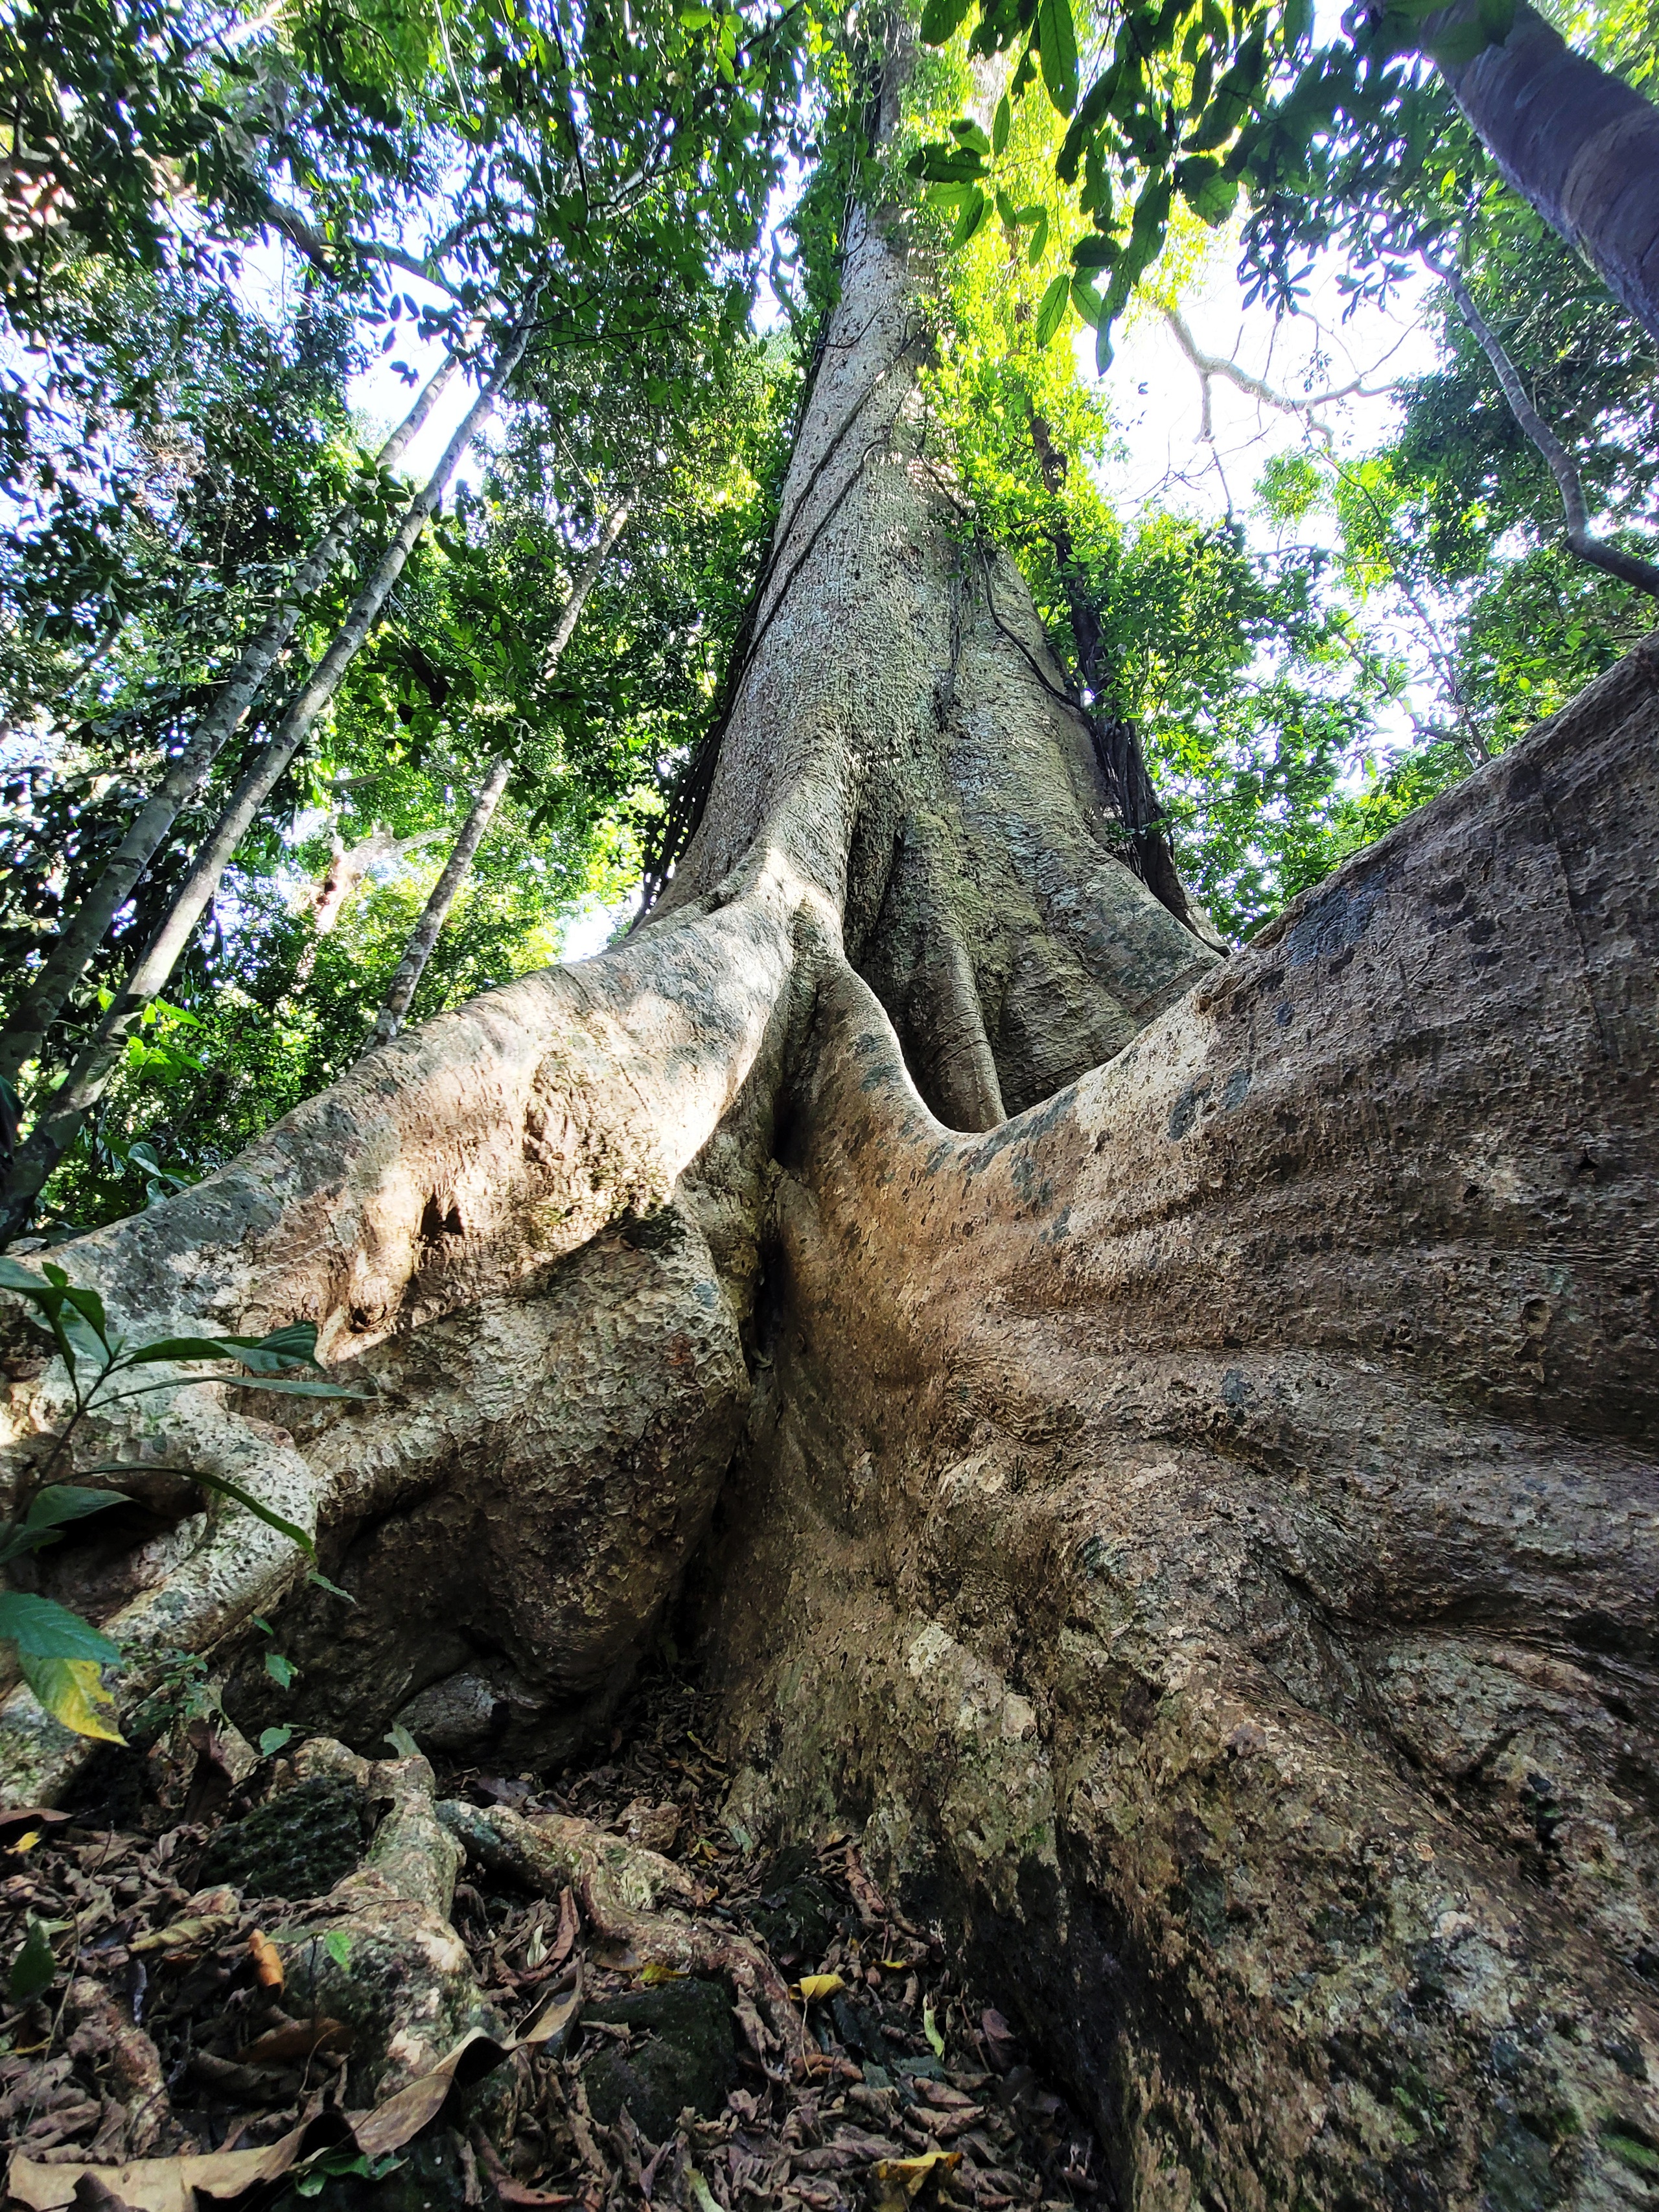 Một cây cổ thụ kỳ mỹ gần 500 tuổi tại khu rừng giáp ranh Lâm Đồng, Bình Phước, Đồng Nai ví như "thằn lằn sấm"- Ảnh 5.